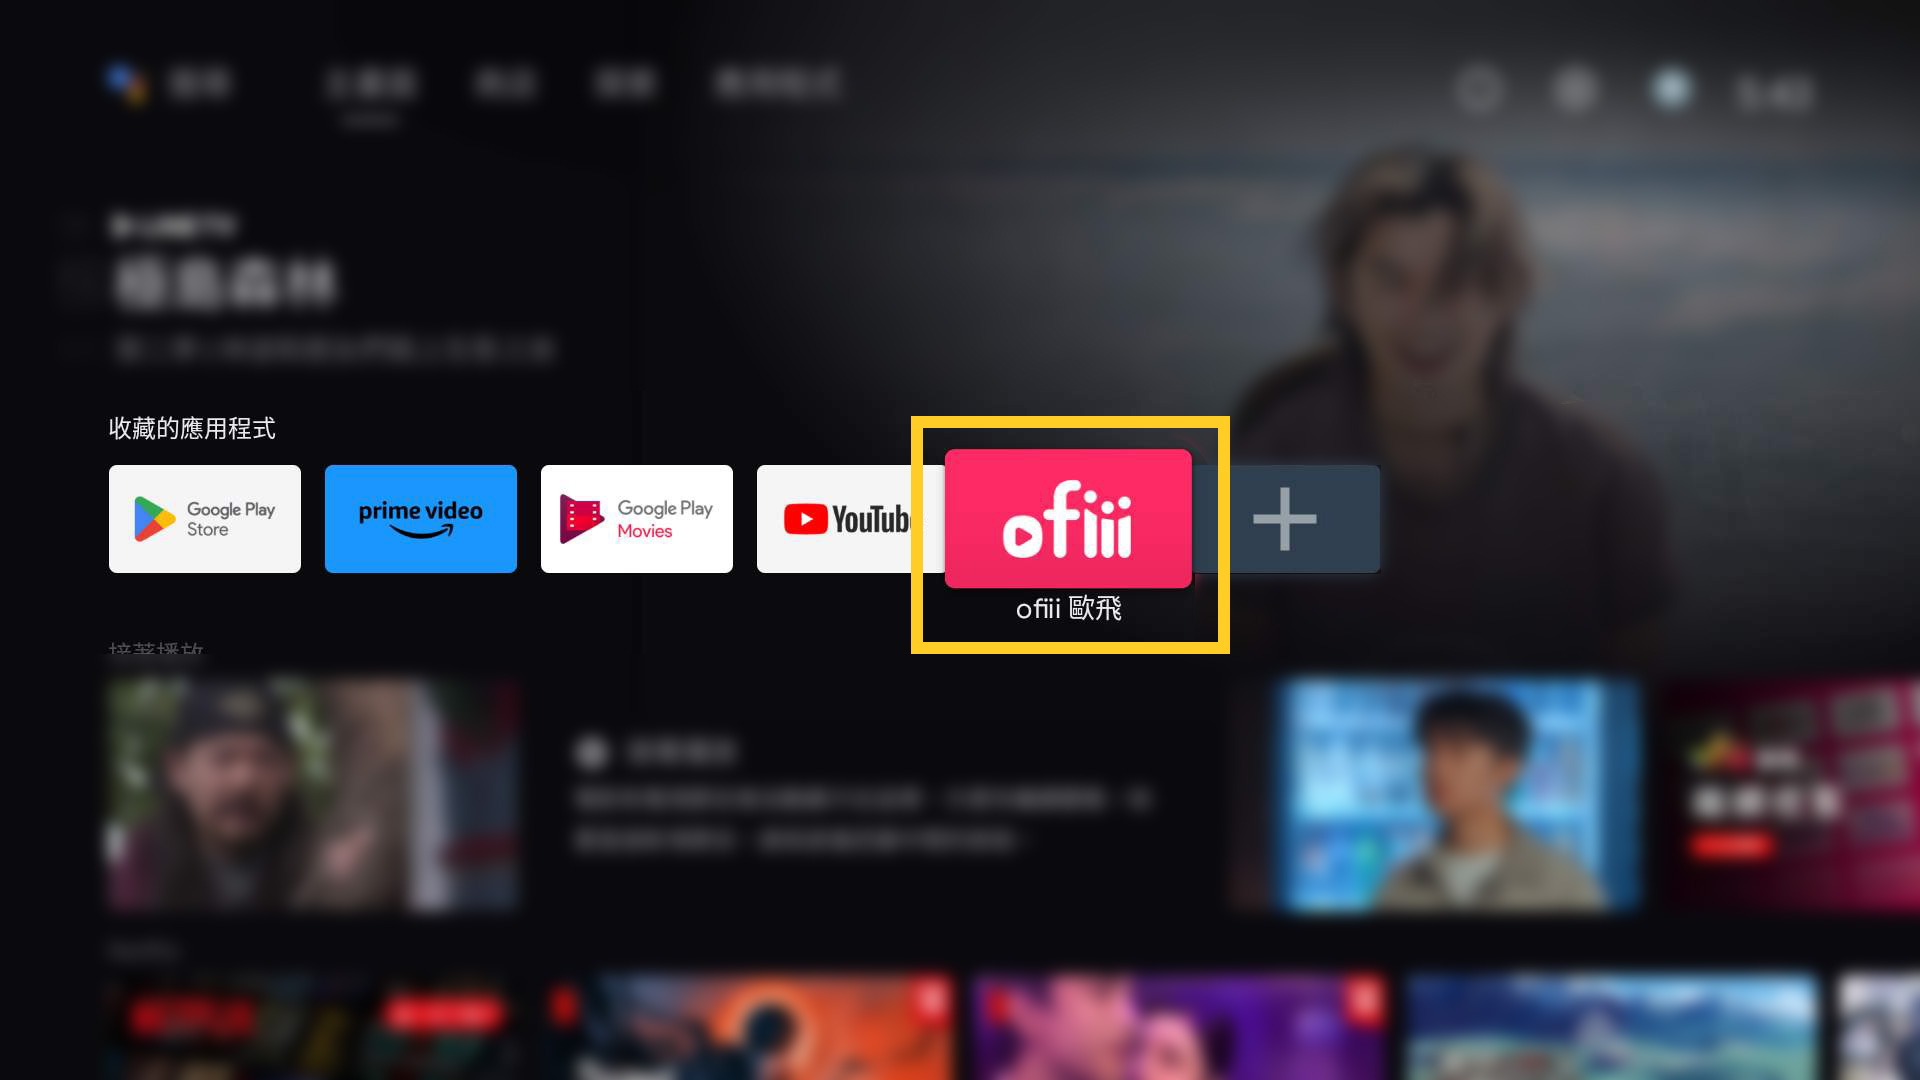 收藏後，則可於 Android TV 主畫面，找到「ofiii」TV APP。